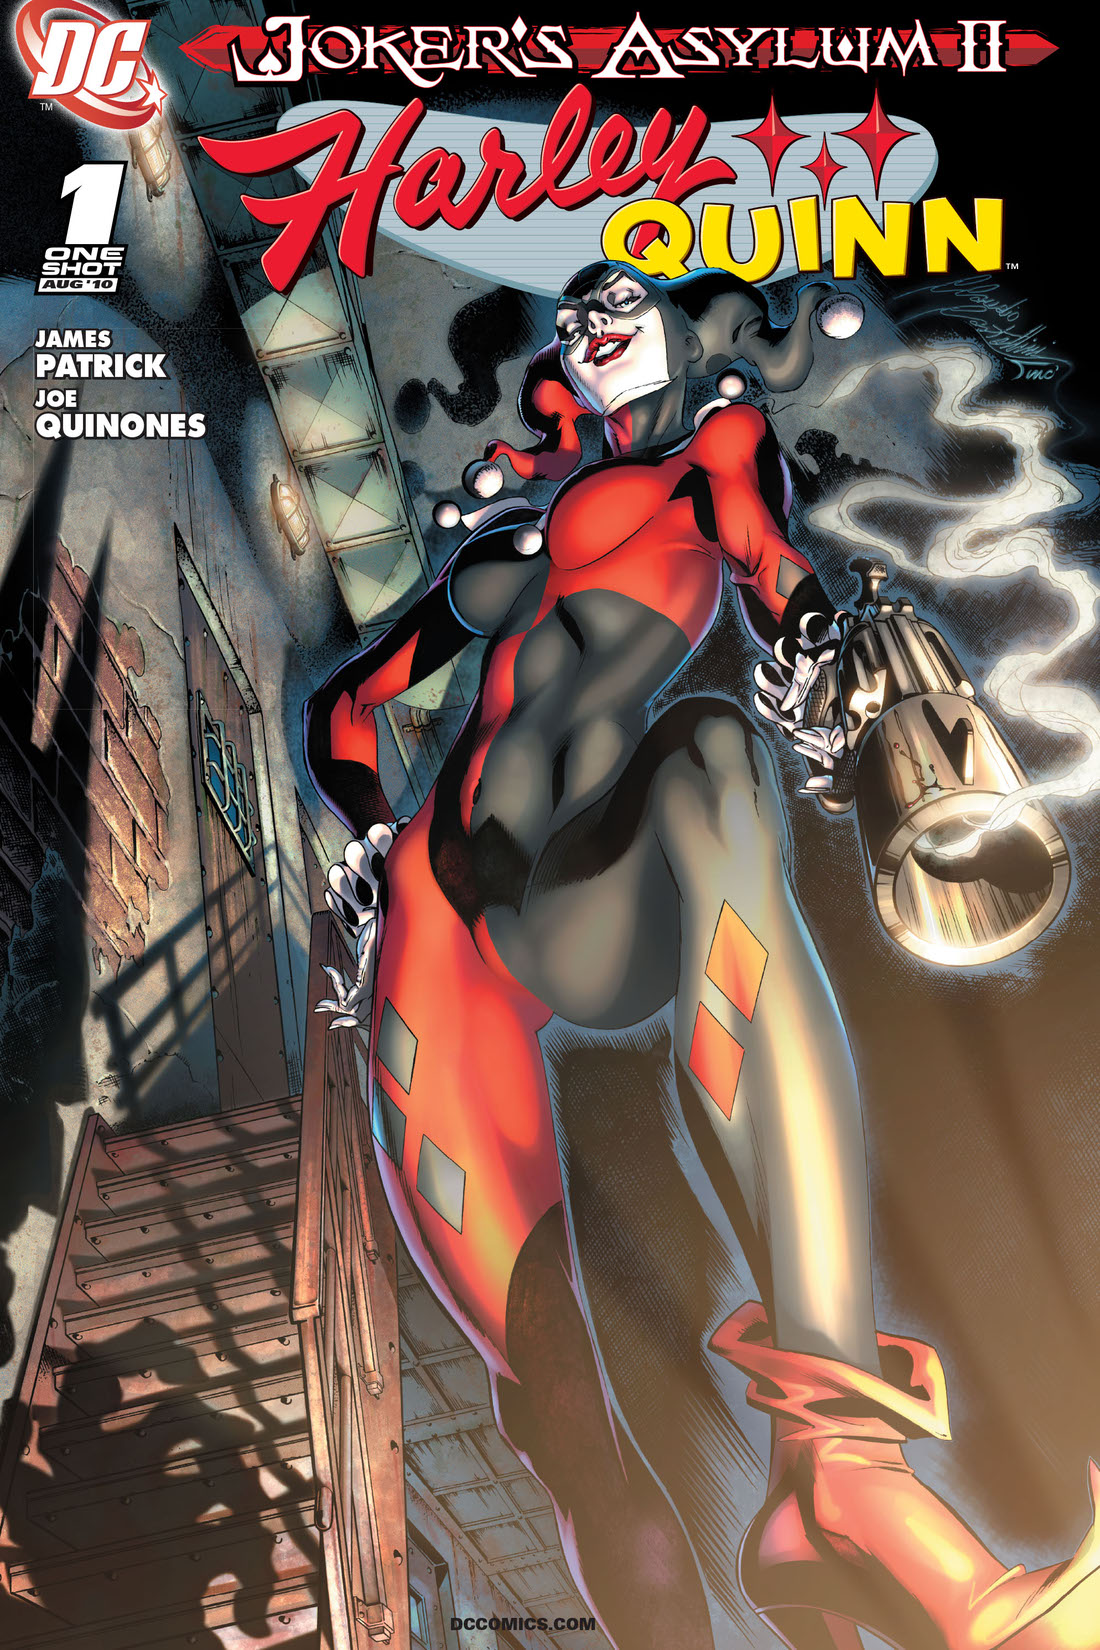 Joker's Asylum II: Harley Quinn #1 preview images